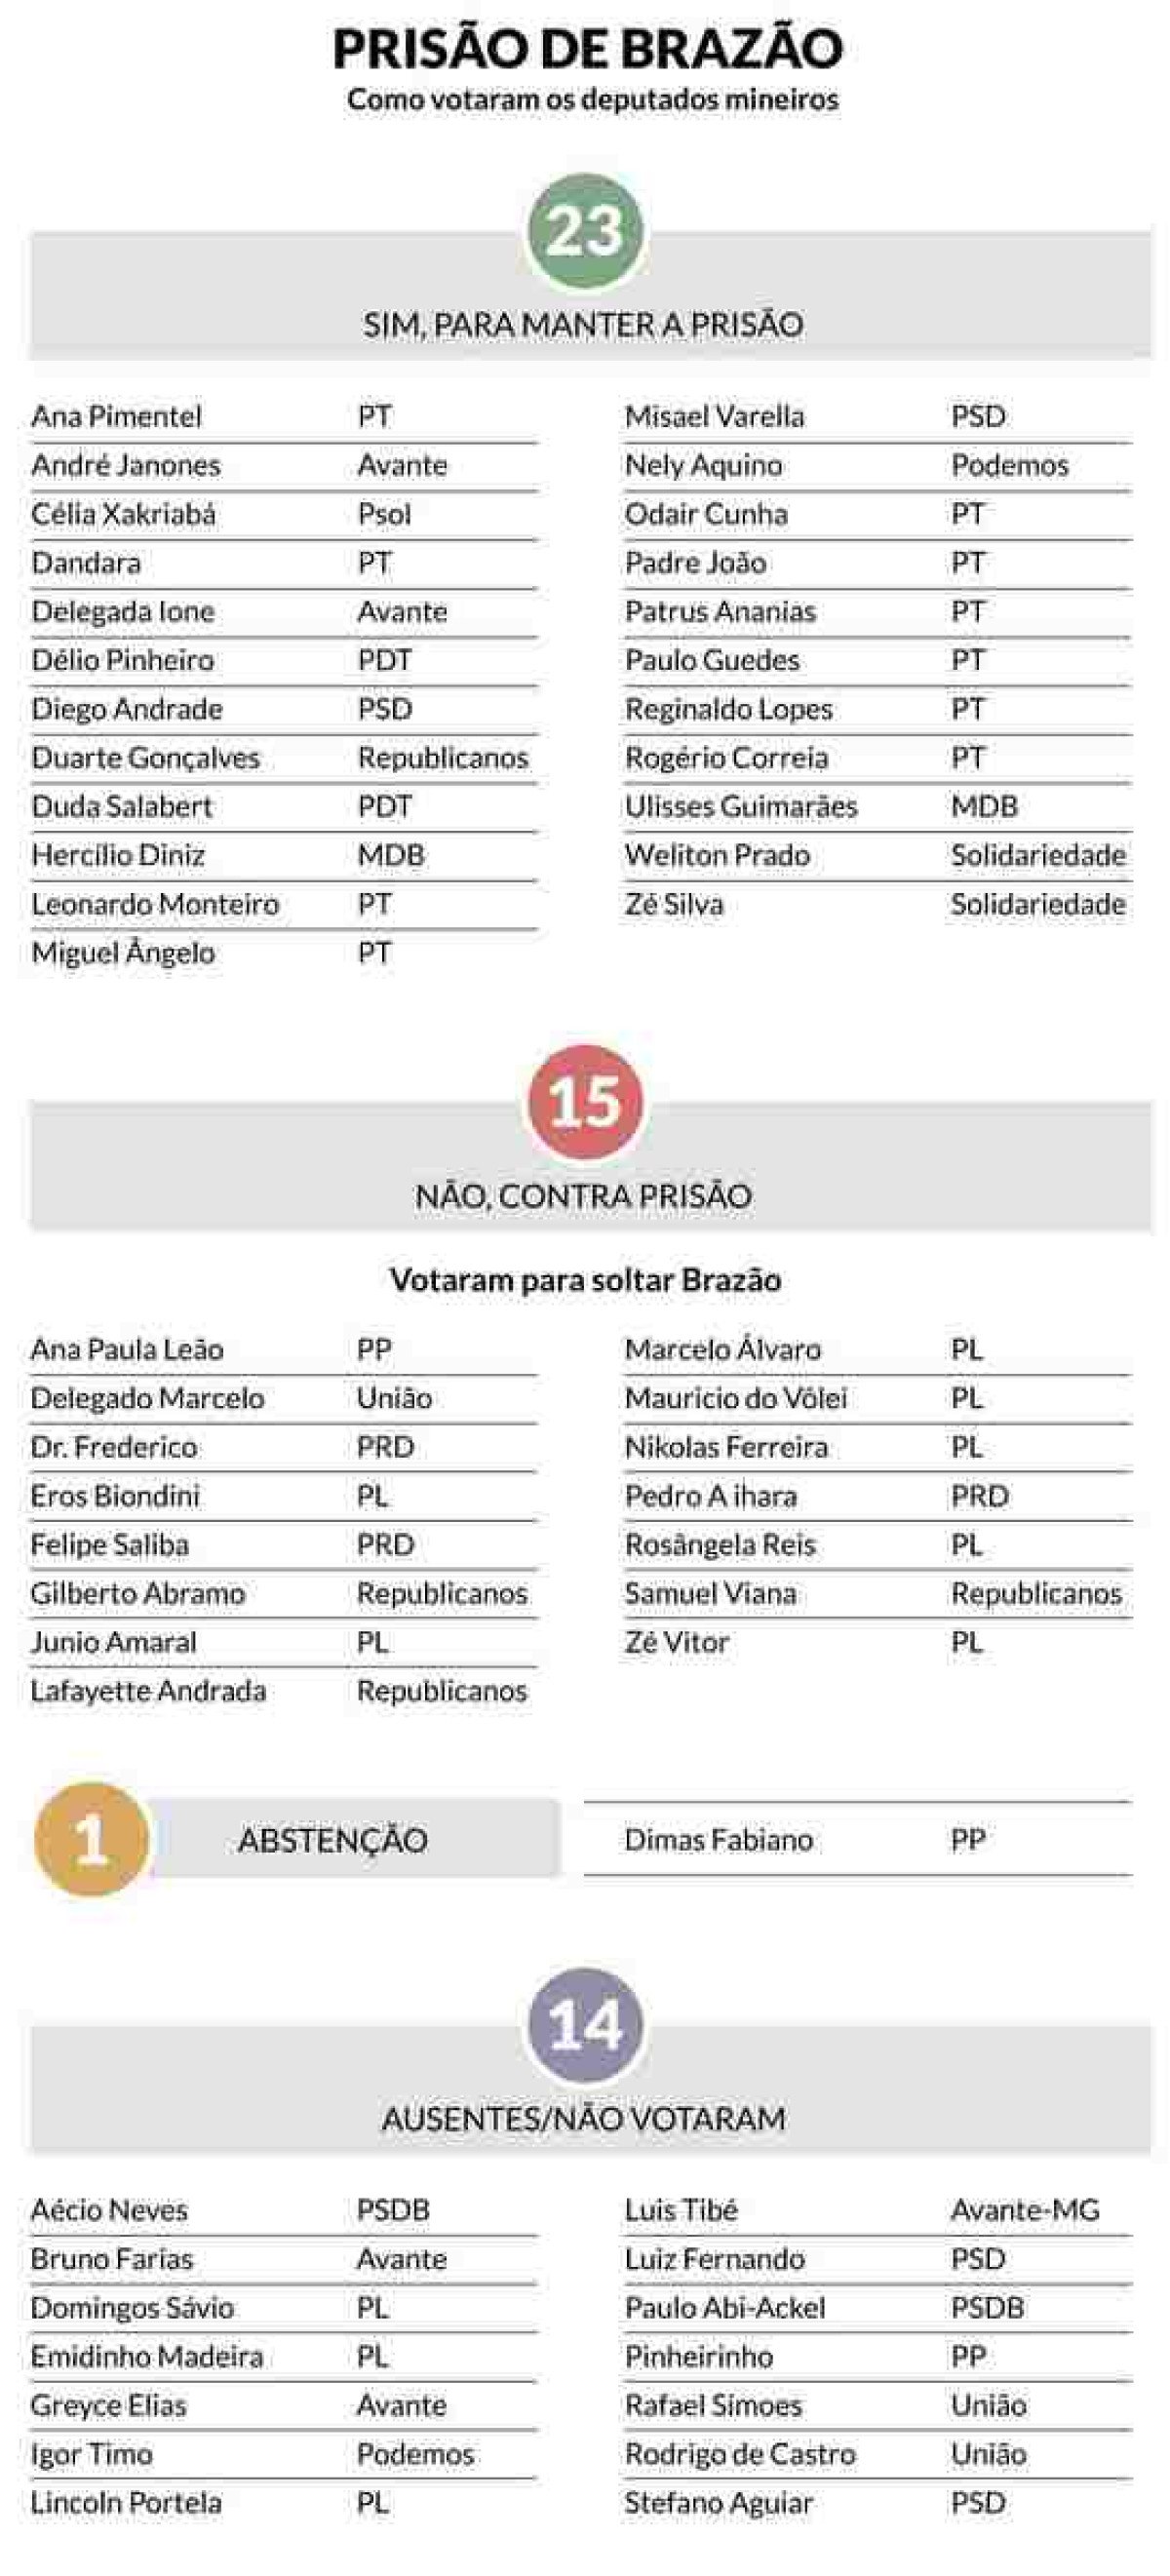 Lista de como votaram os deputados federais mineiros para manter ou não a prisão de Chiquinho Brazão